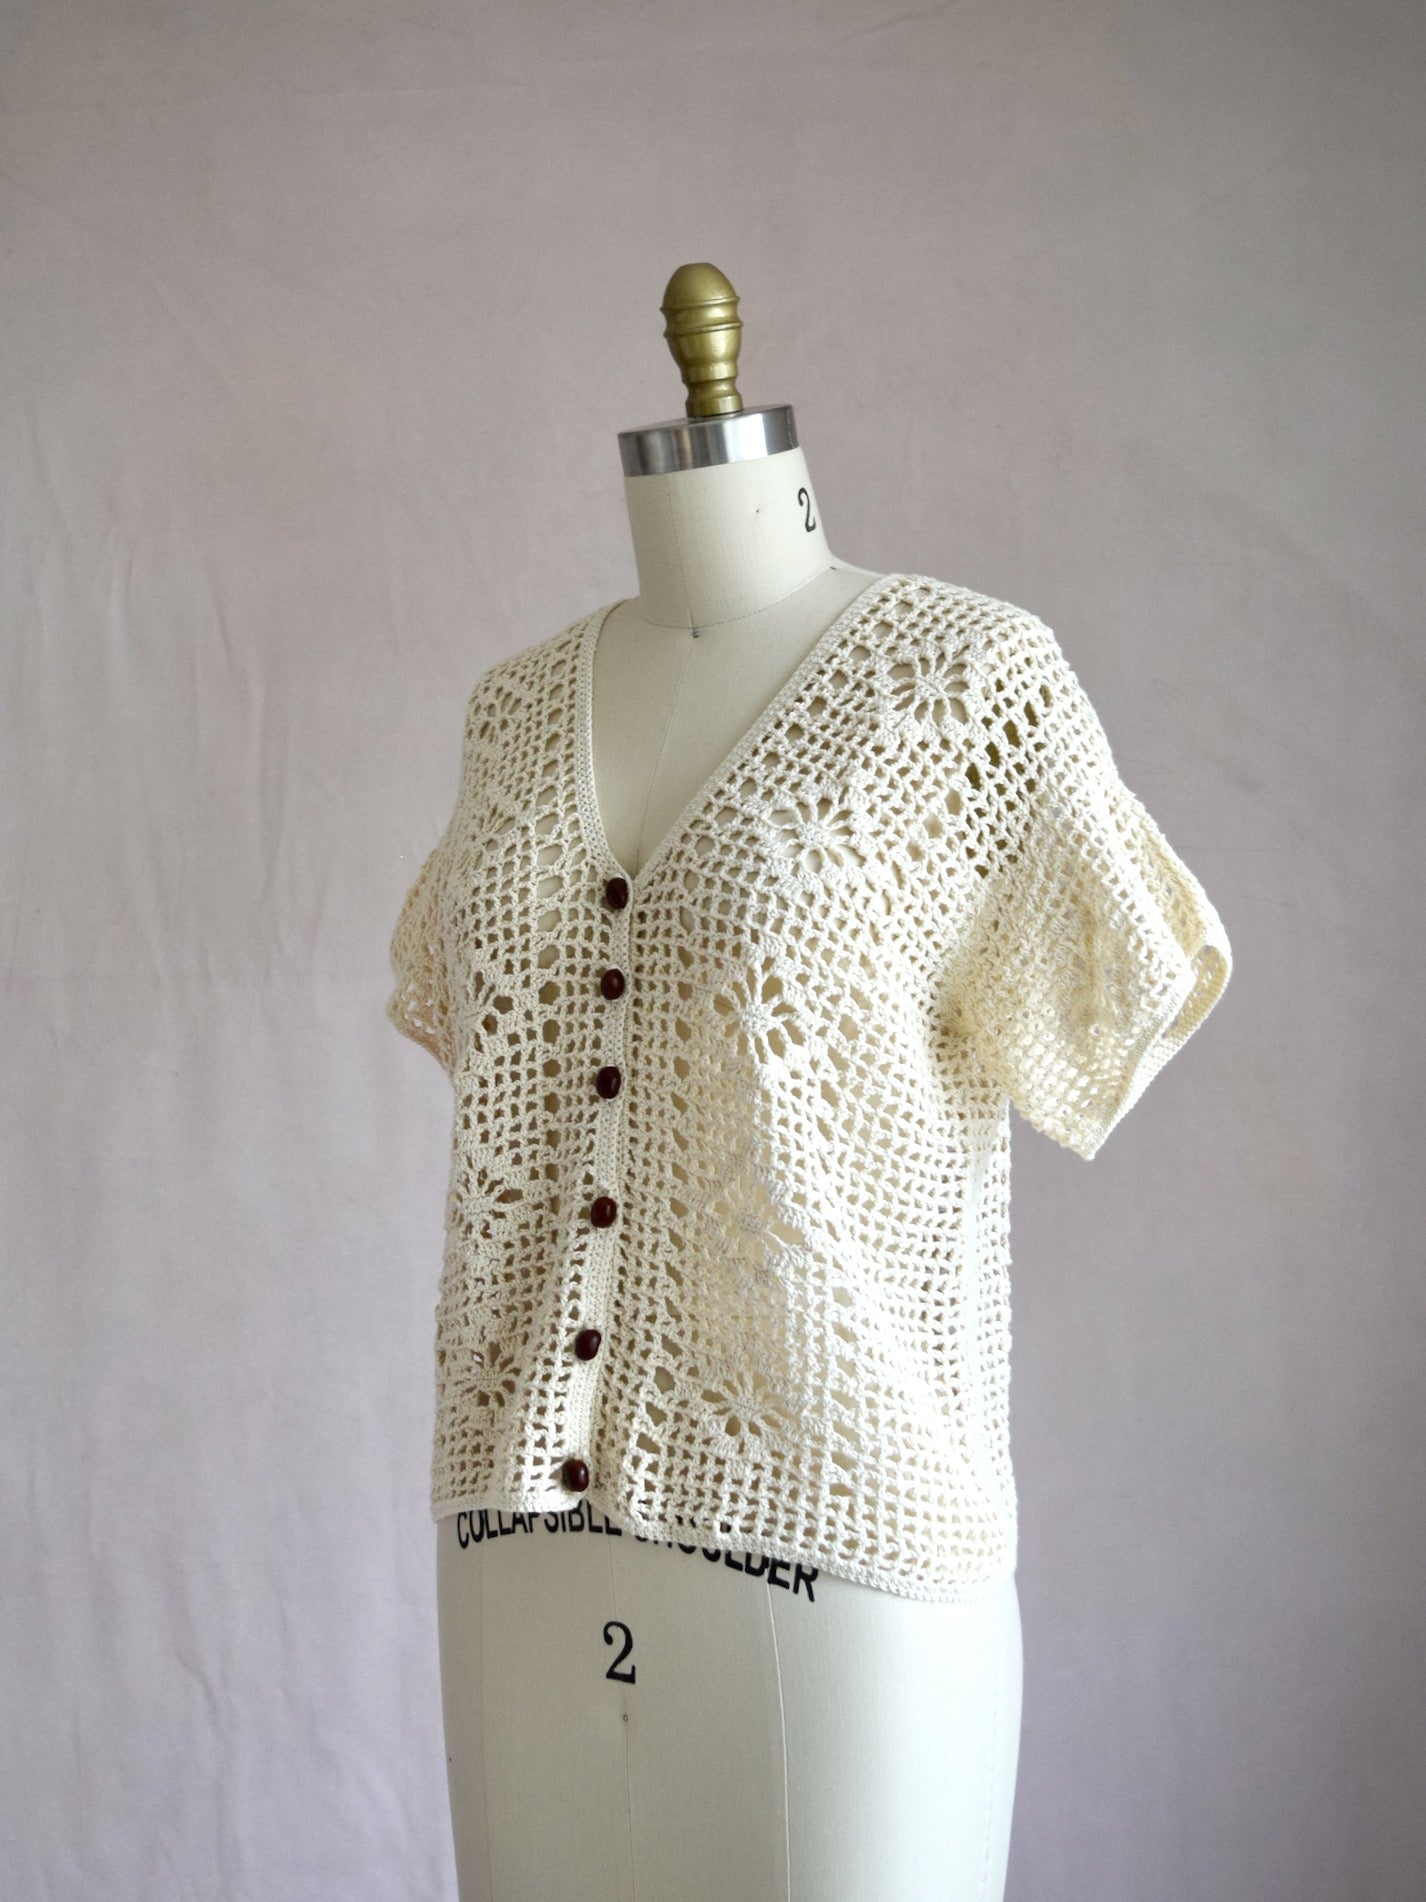 vintage 1970s short sleeve top in cream crochet